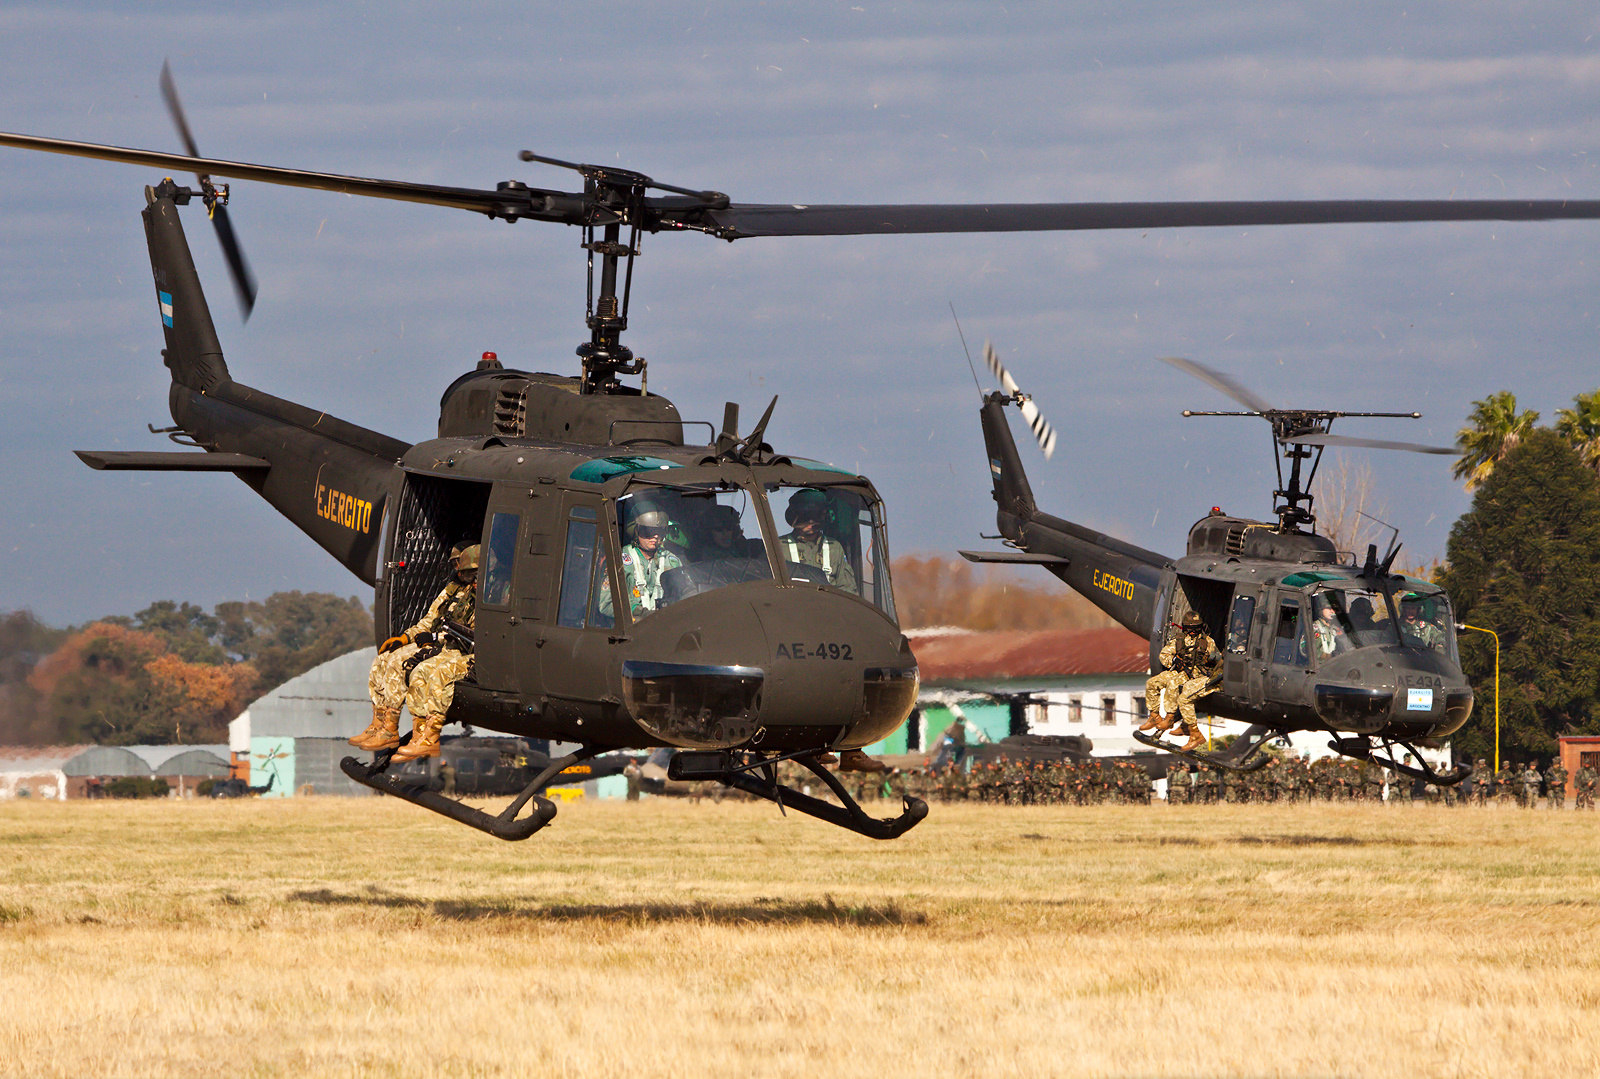 Американские военные вертолеты. Bell uh-1 ирокез. Белл uh-1 «ирокез». Bell uh-1 Iroquois вертолёты США. Uh-1 Iroquois во Вьетнаме.